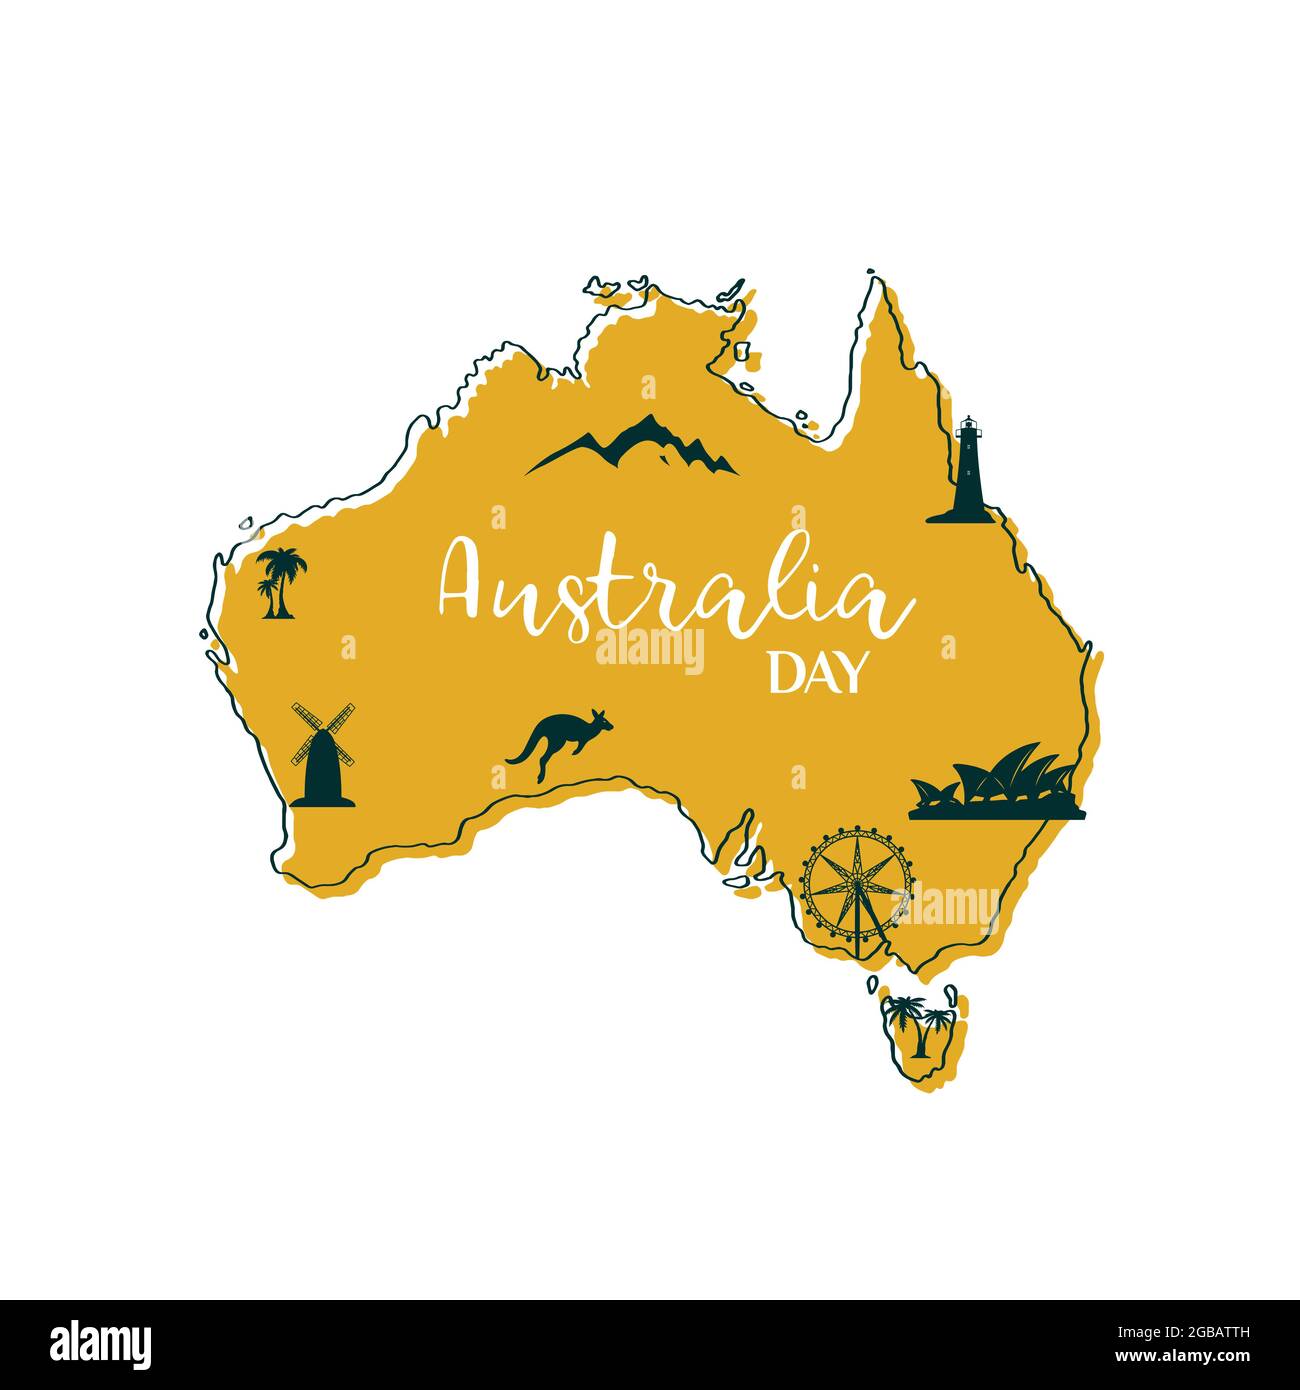 Mappa stilizzata dell'Australia con i principali simboli australiani Kanguroo, Sydney Opera House, ruota panoramica, Light House, palme e montagne. Vettore illustrati Illustrazione Vettoriale